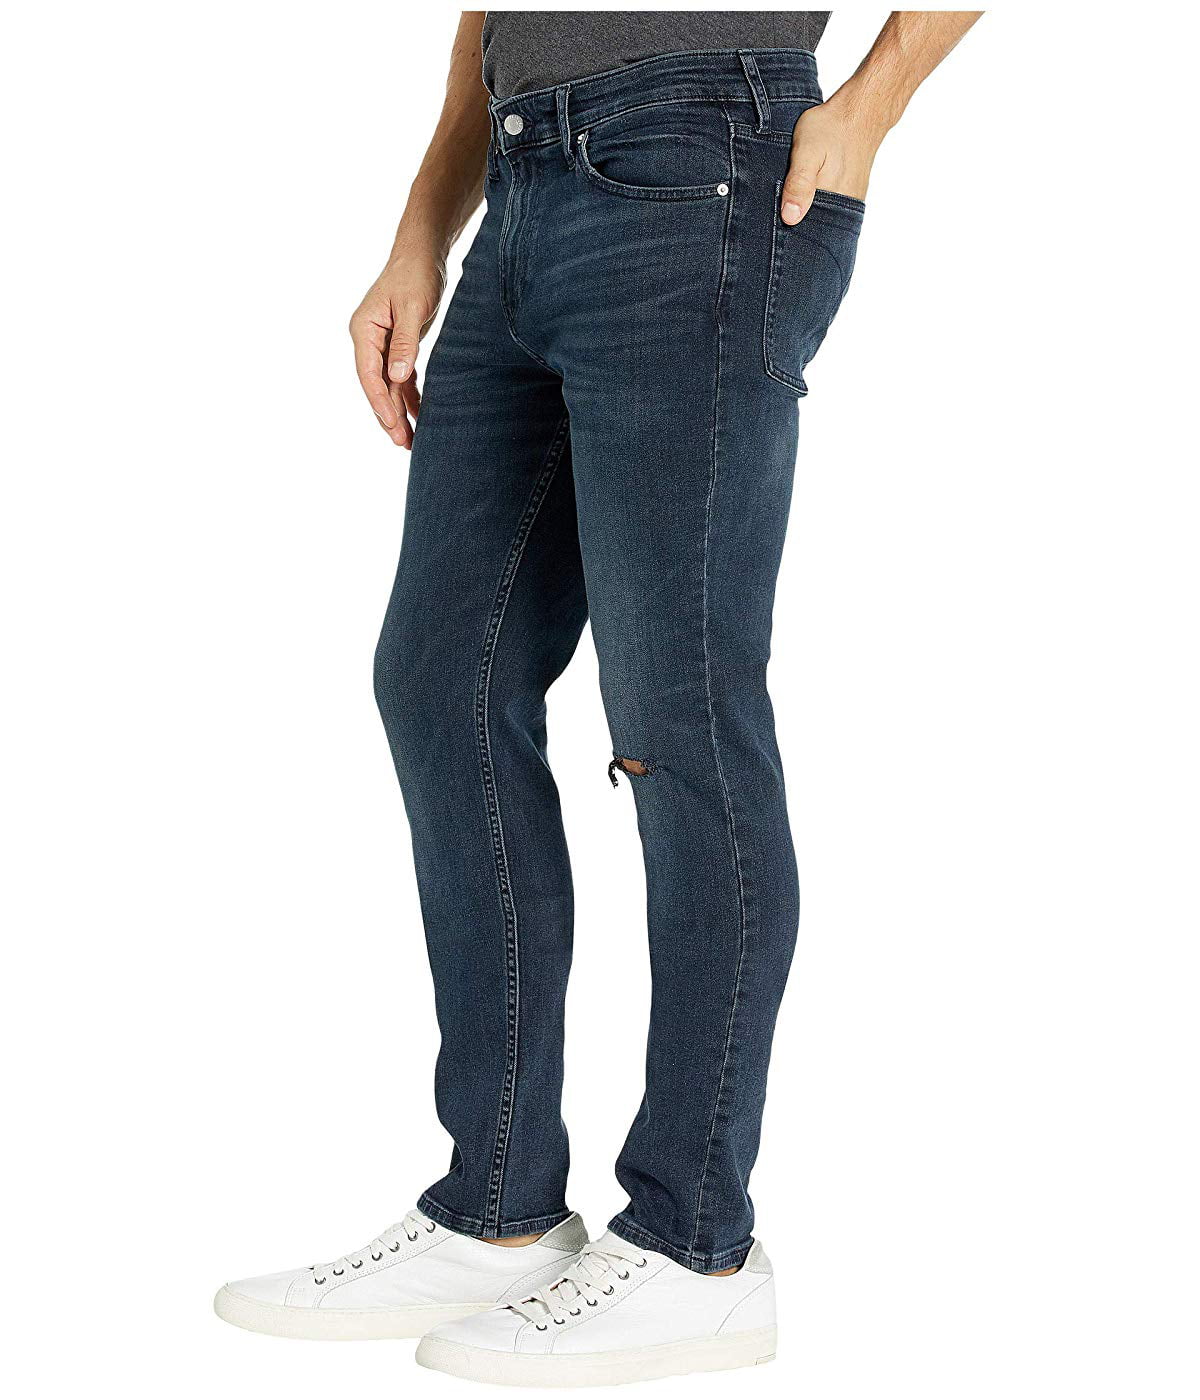 Calvin Klein - Calvin Klein Jeans Slim Fit Black Friday - Walmart.com ...